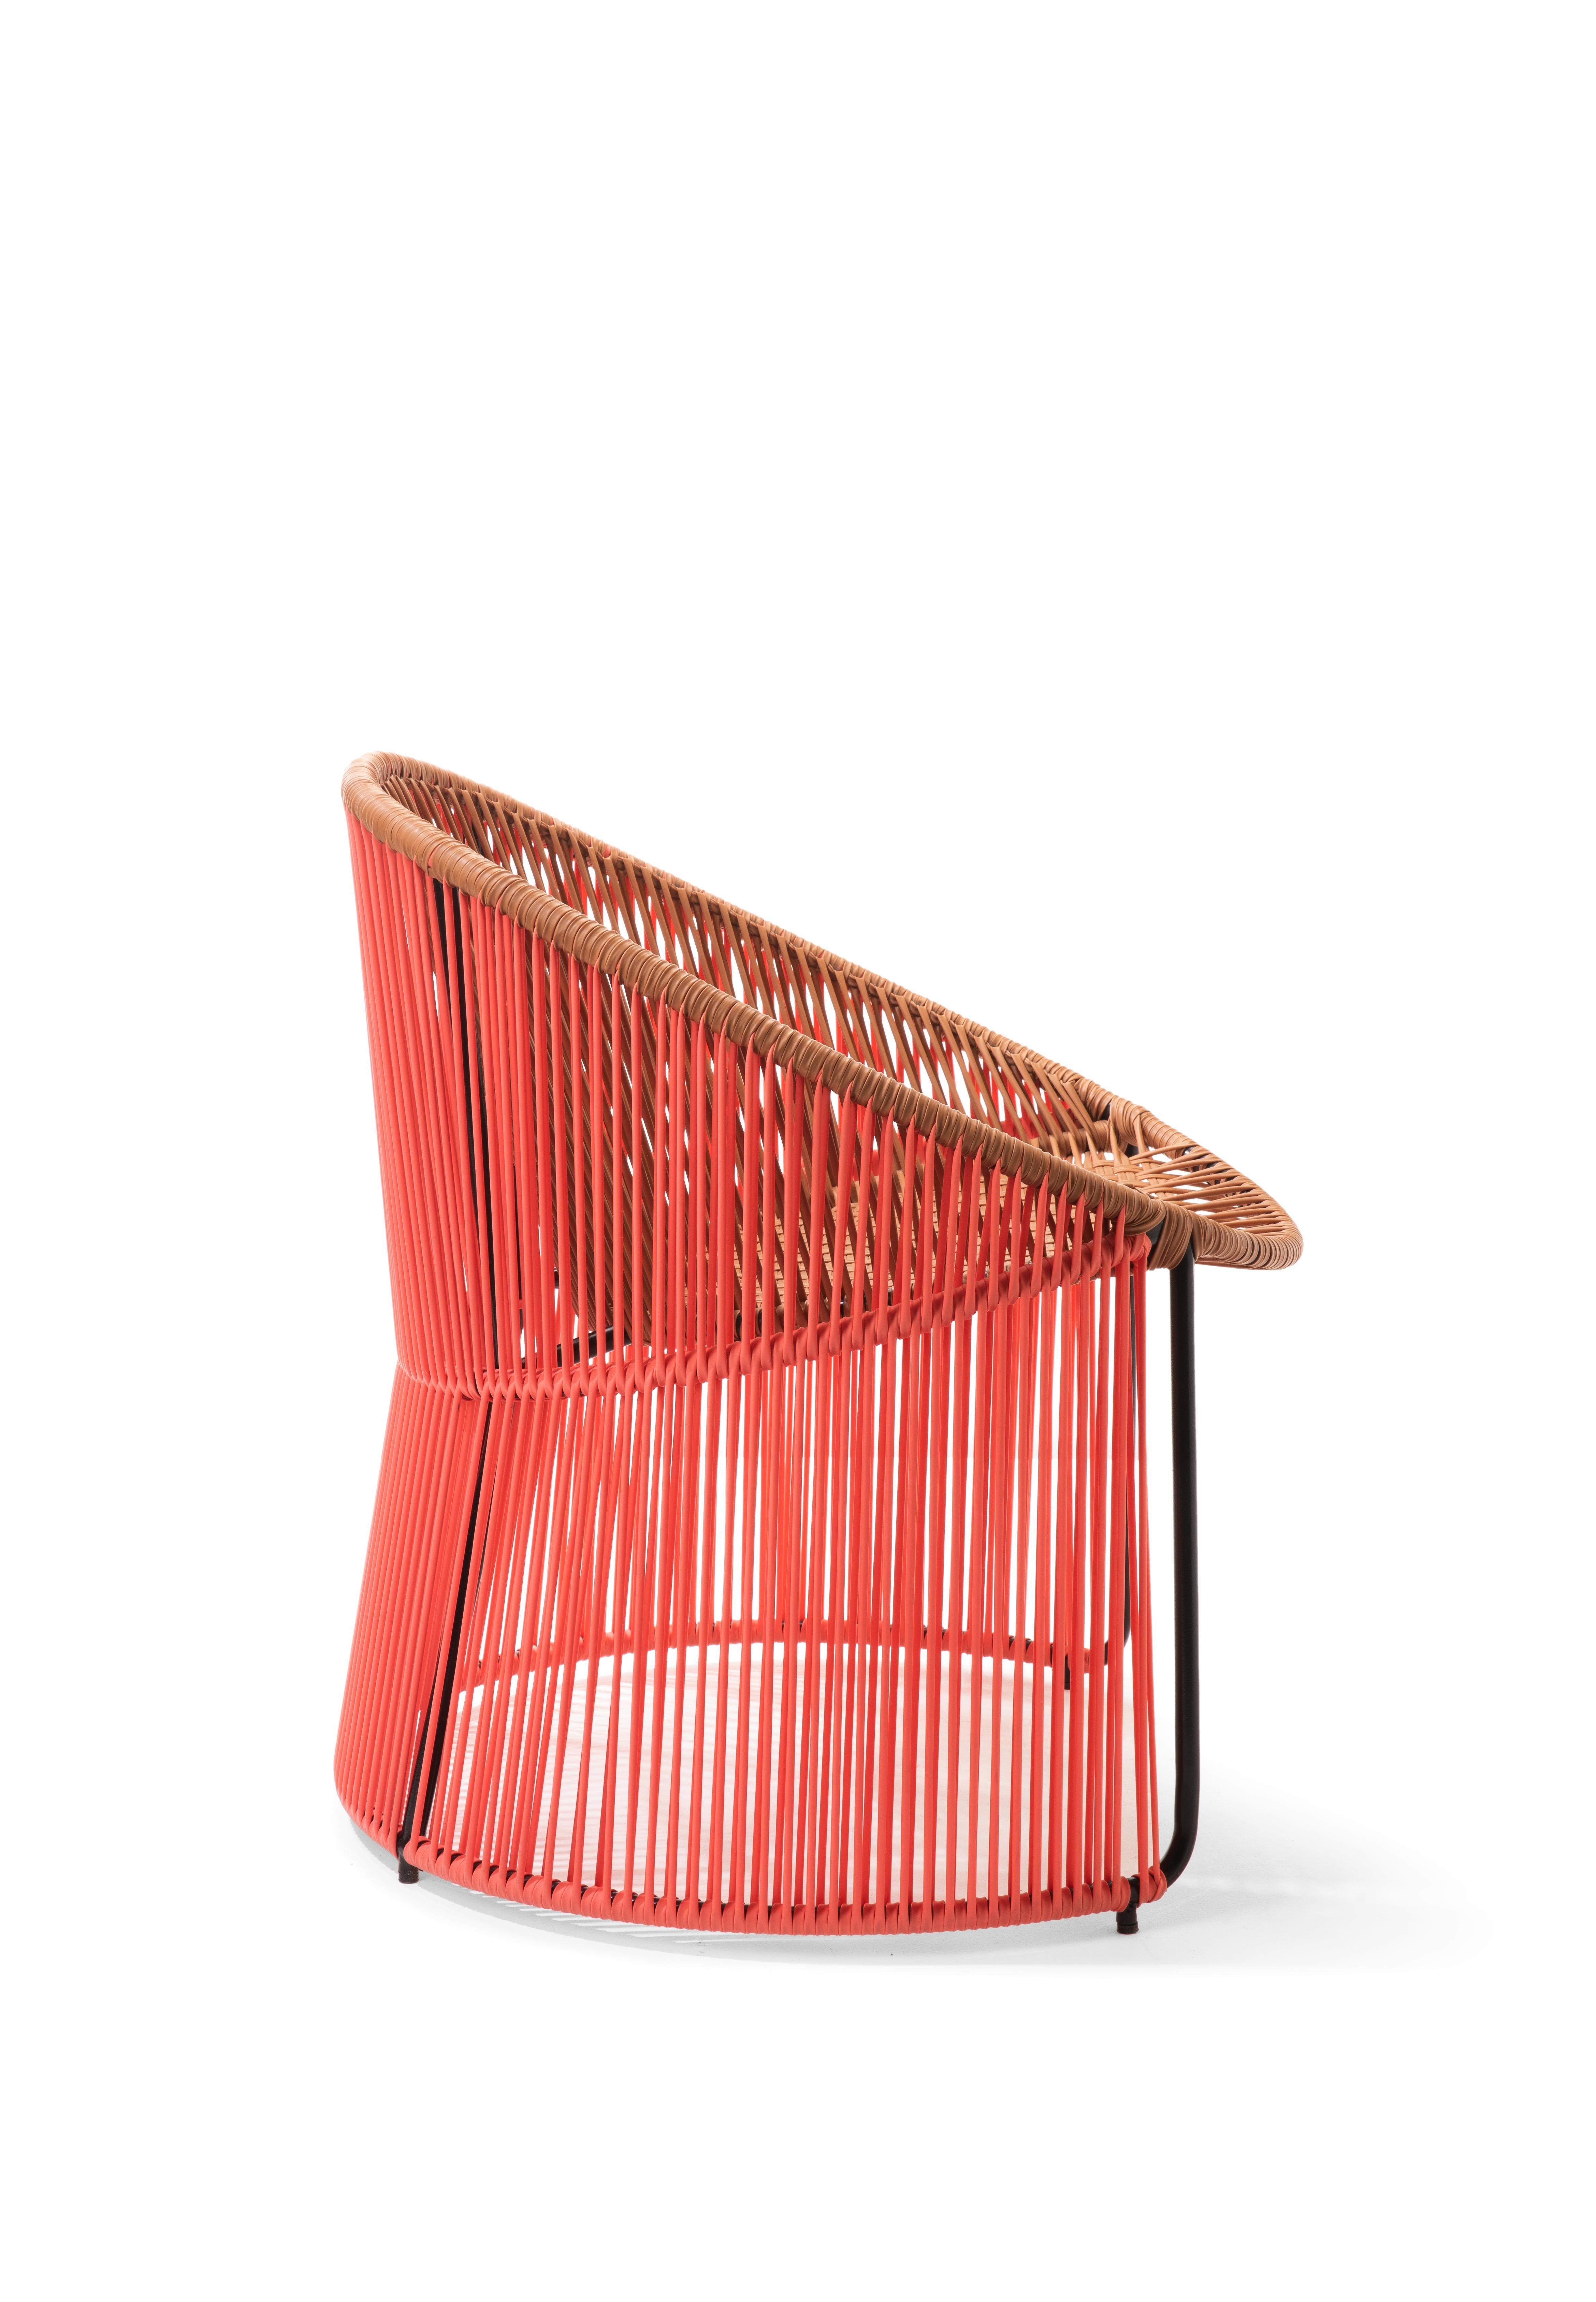 German Set of 2 Coral Cartagenas Lounge Chair by Sebastian Herkner For Sale